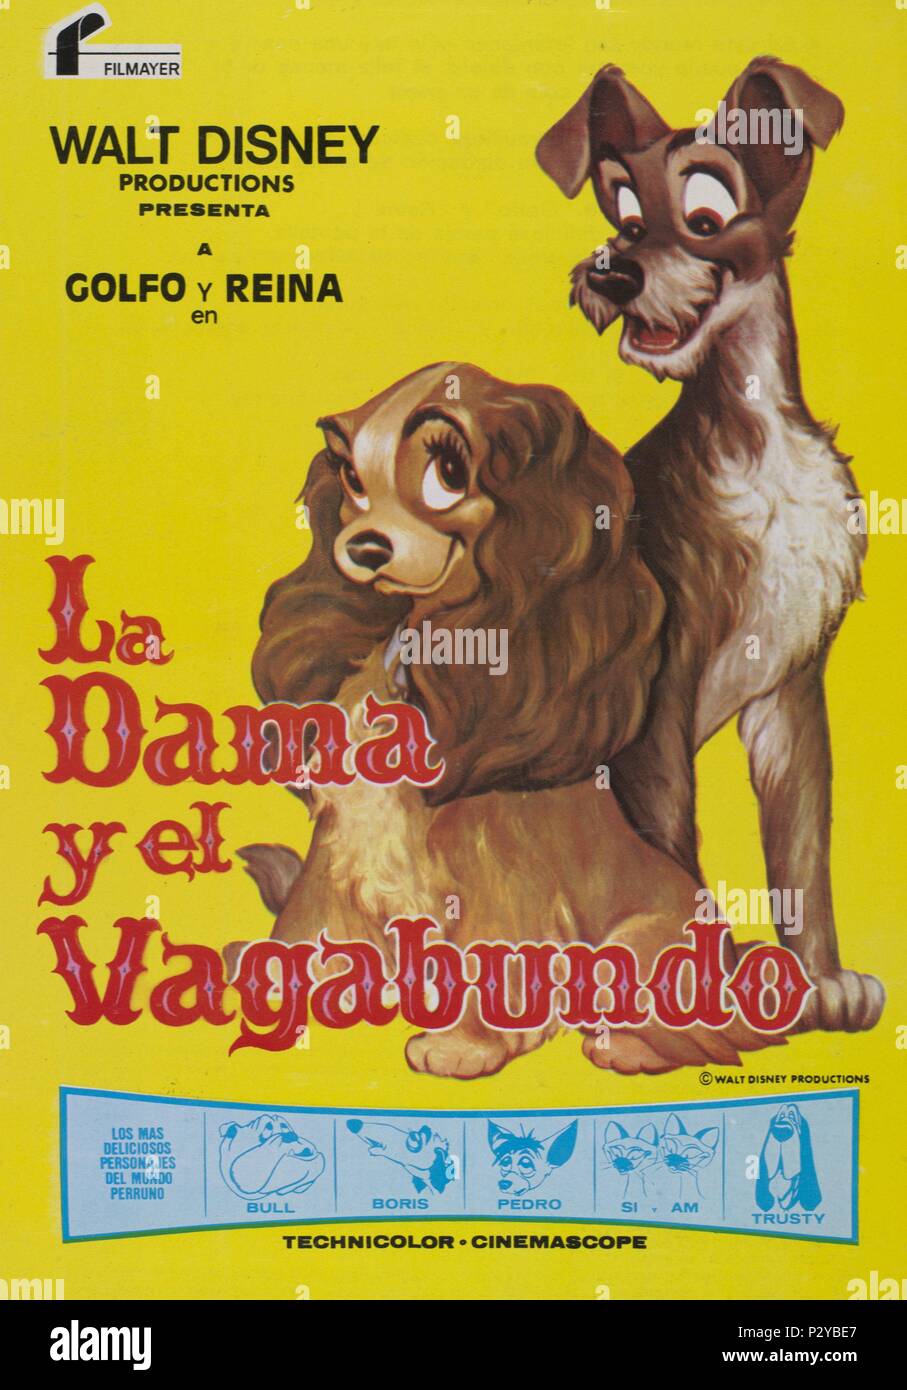 La dama y el vagabundo editorial stock image. Image of film - 172789849